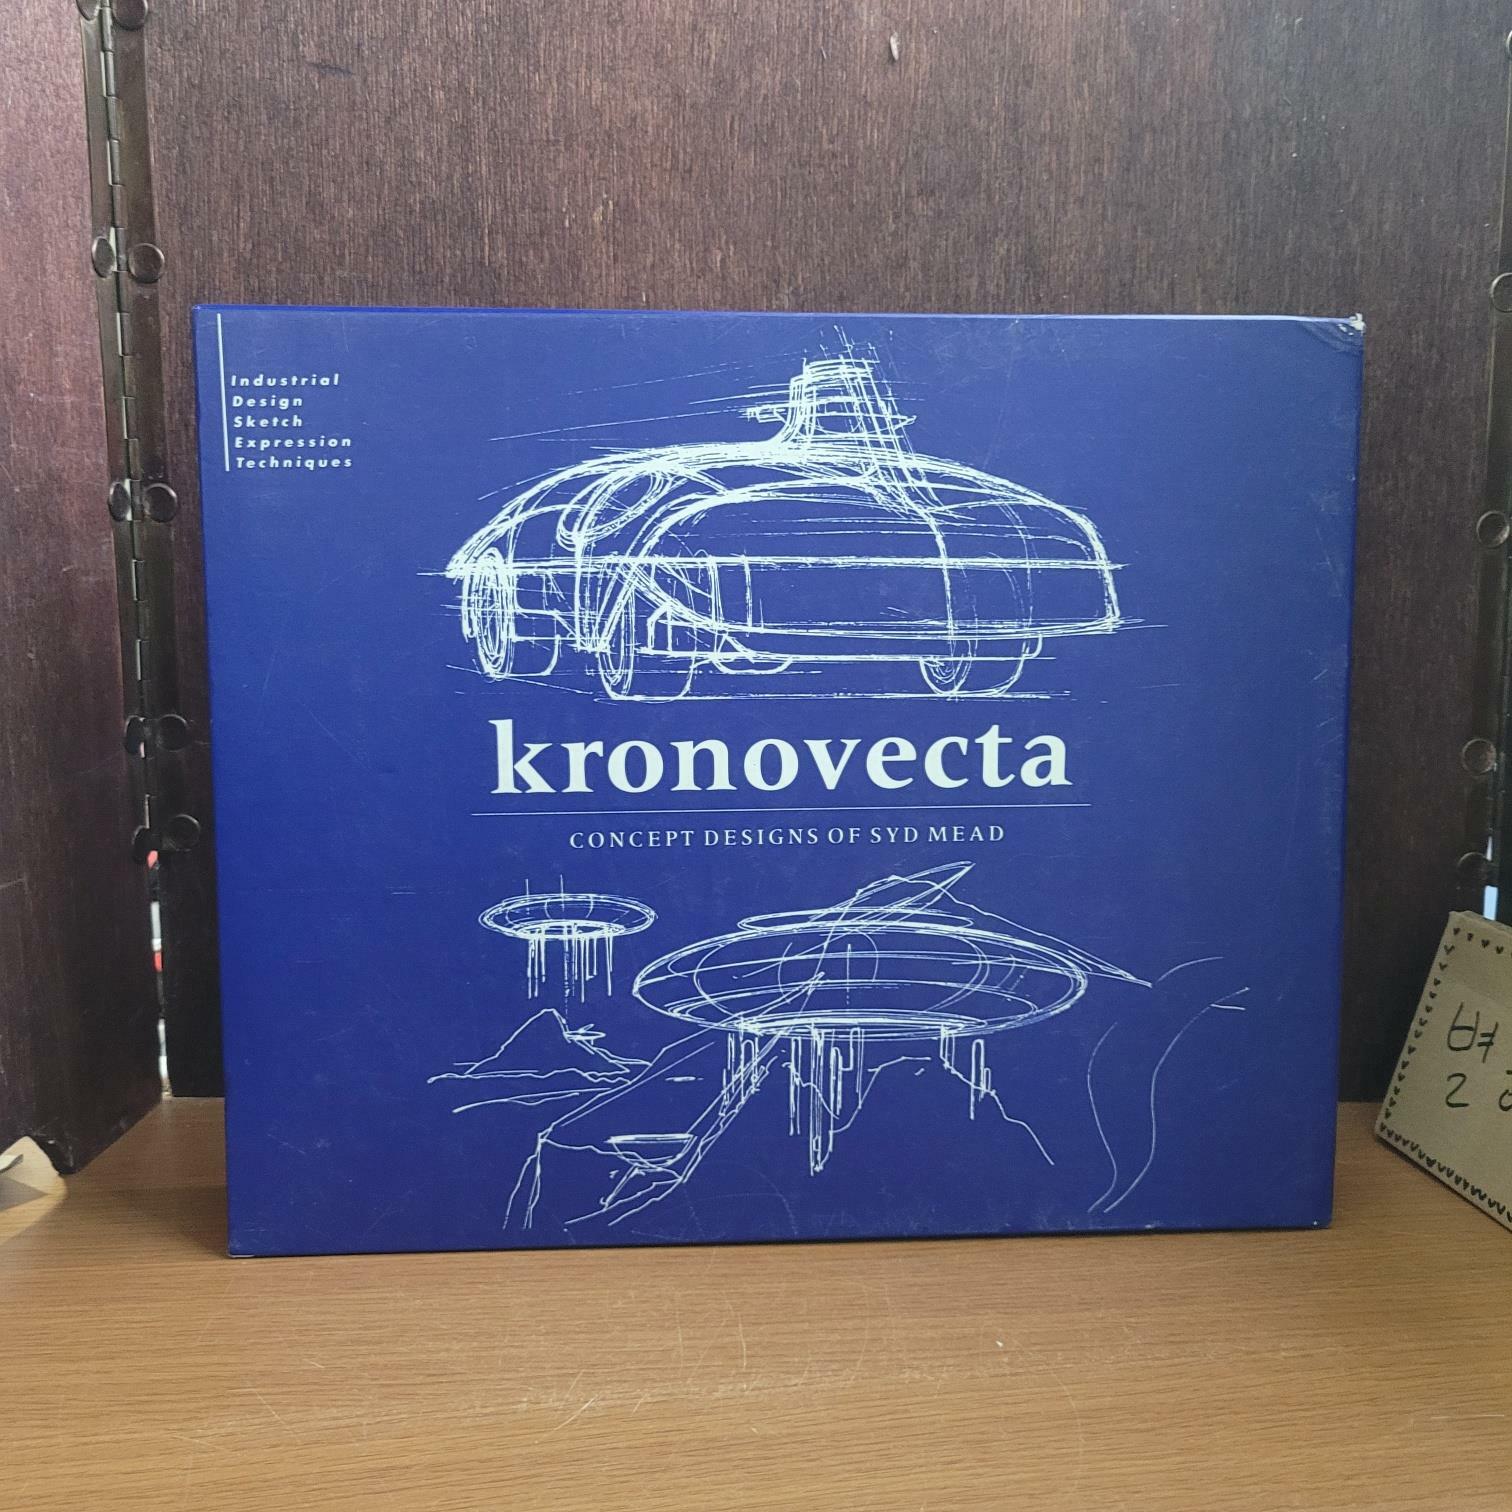 [중고] 반다이) Kronovecta Concept Designs of Syd Mead / KRONOTEKO ART OF SYD MEAD [전2권/상급/양장본] (양장)